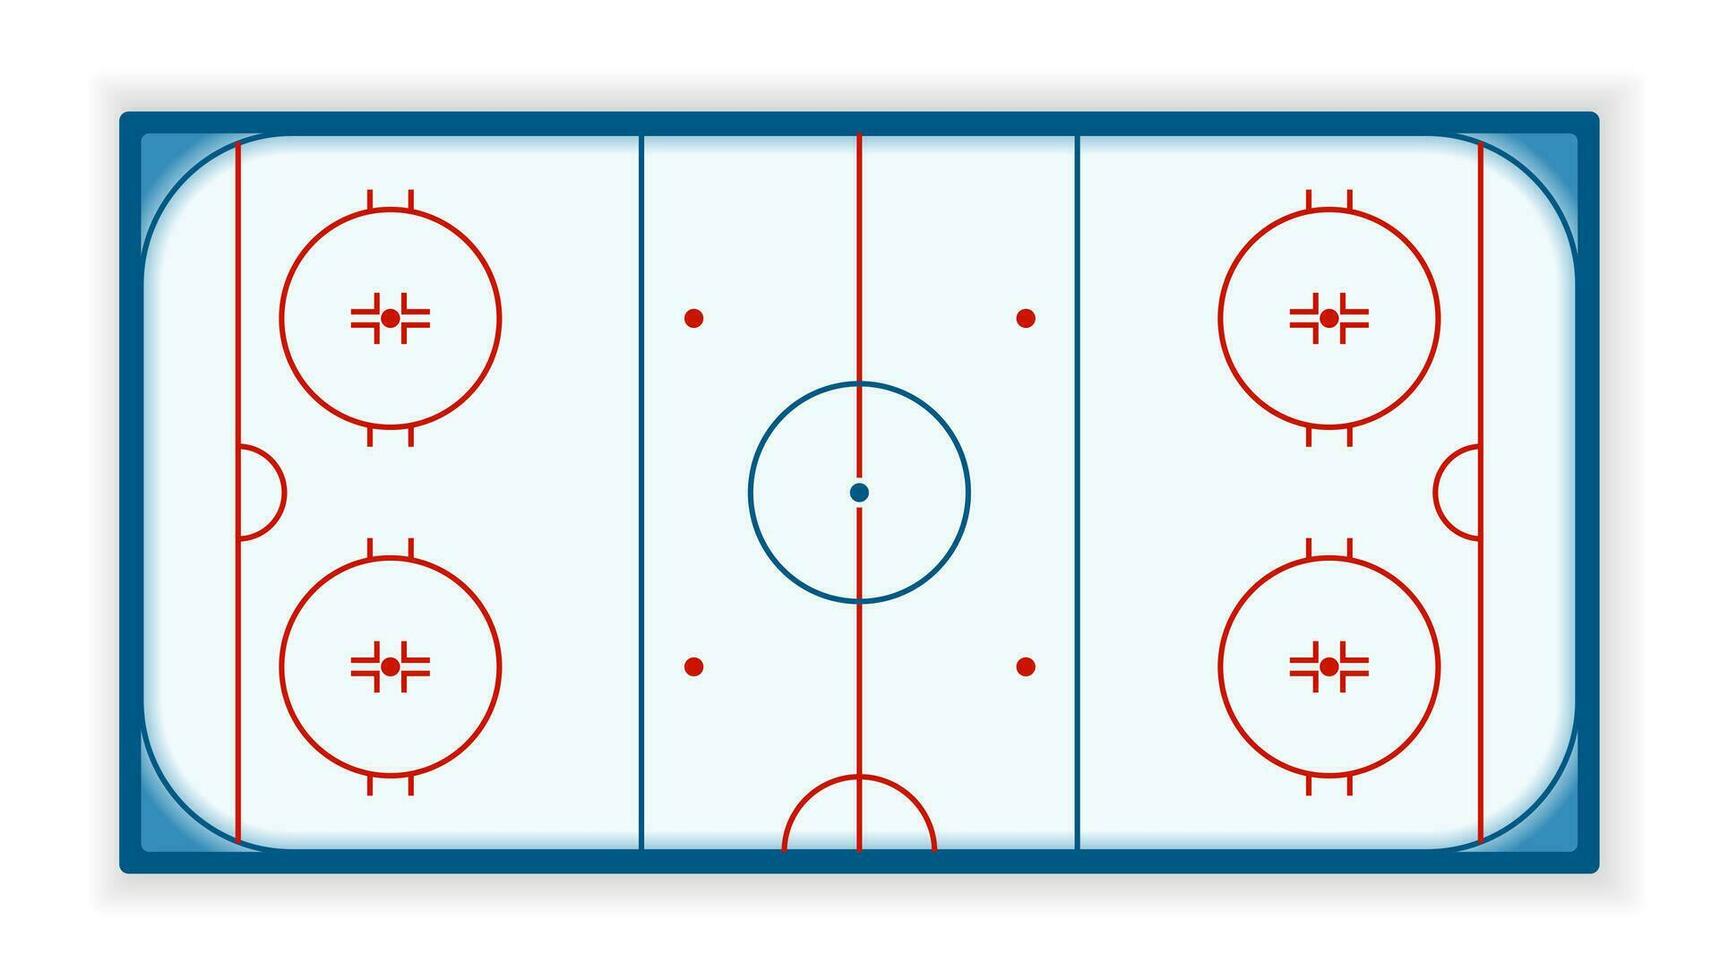 detaljerad illustration av en ishockey rink, fält, domstol, eps10 vektor